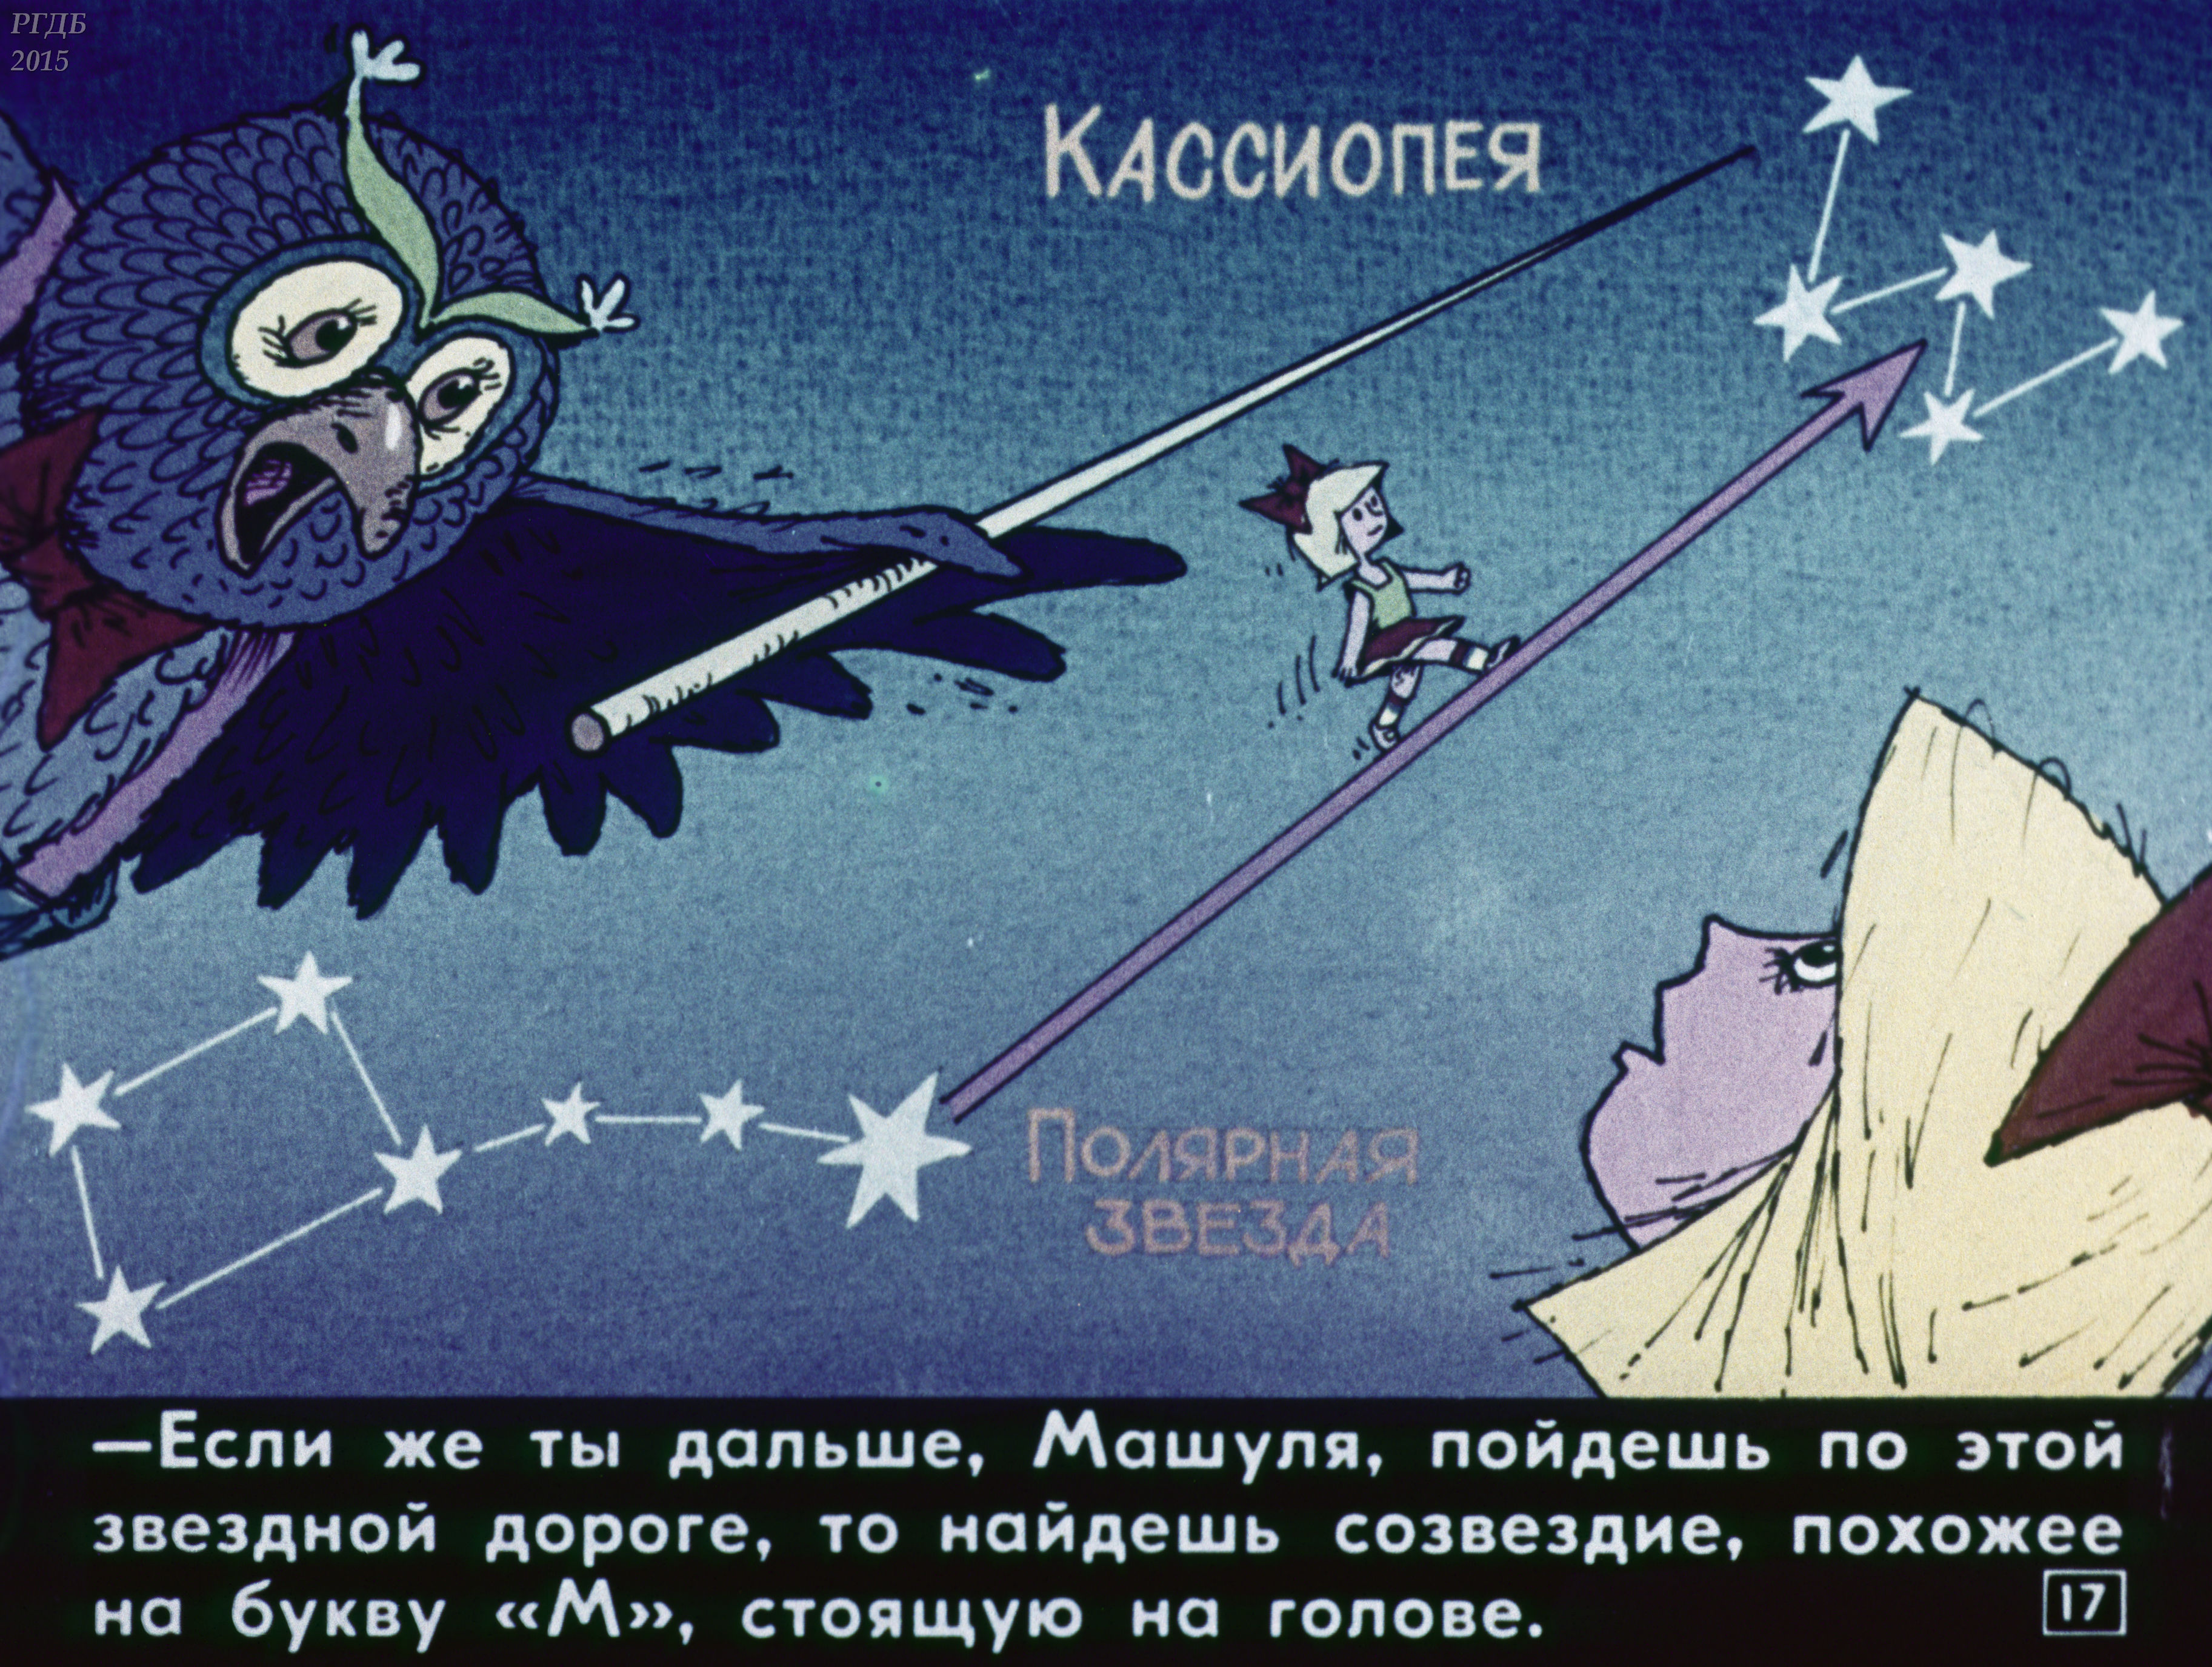 Сказка звезда читать. Звездные сказки. Звездные сказки книга. Сказка о Звездном мальчике", сказка СССР,1983 год.